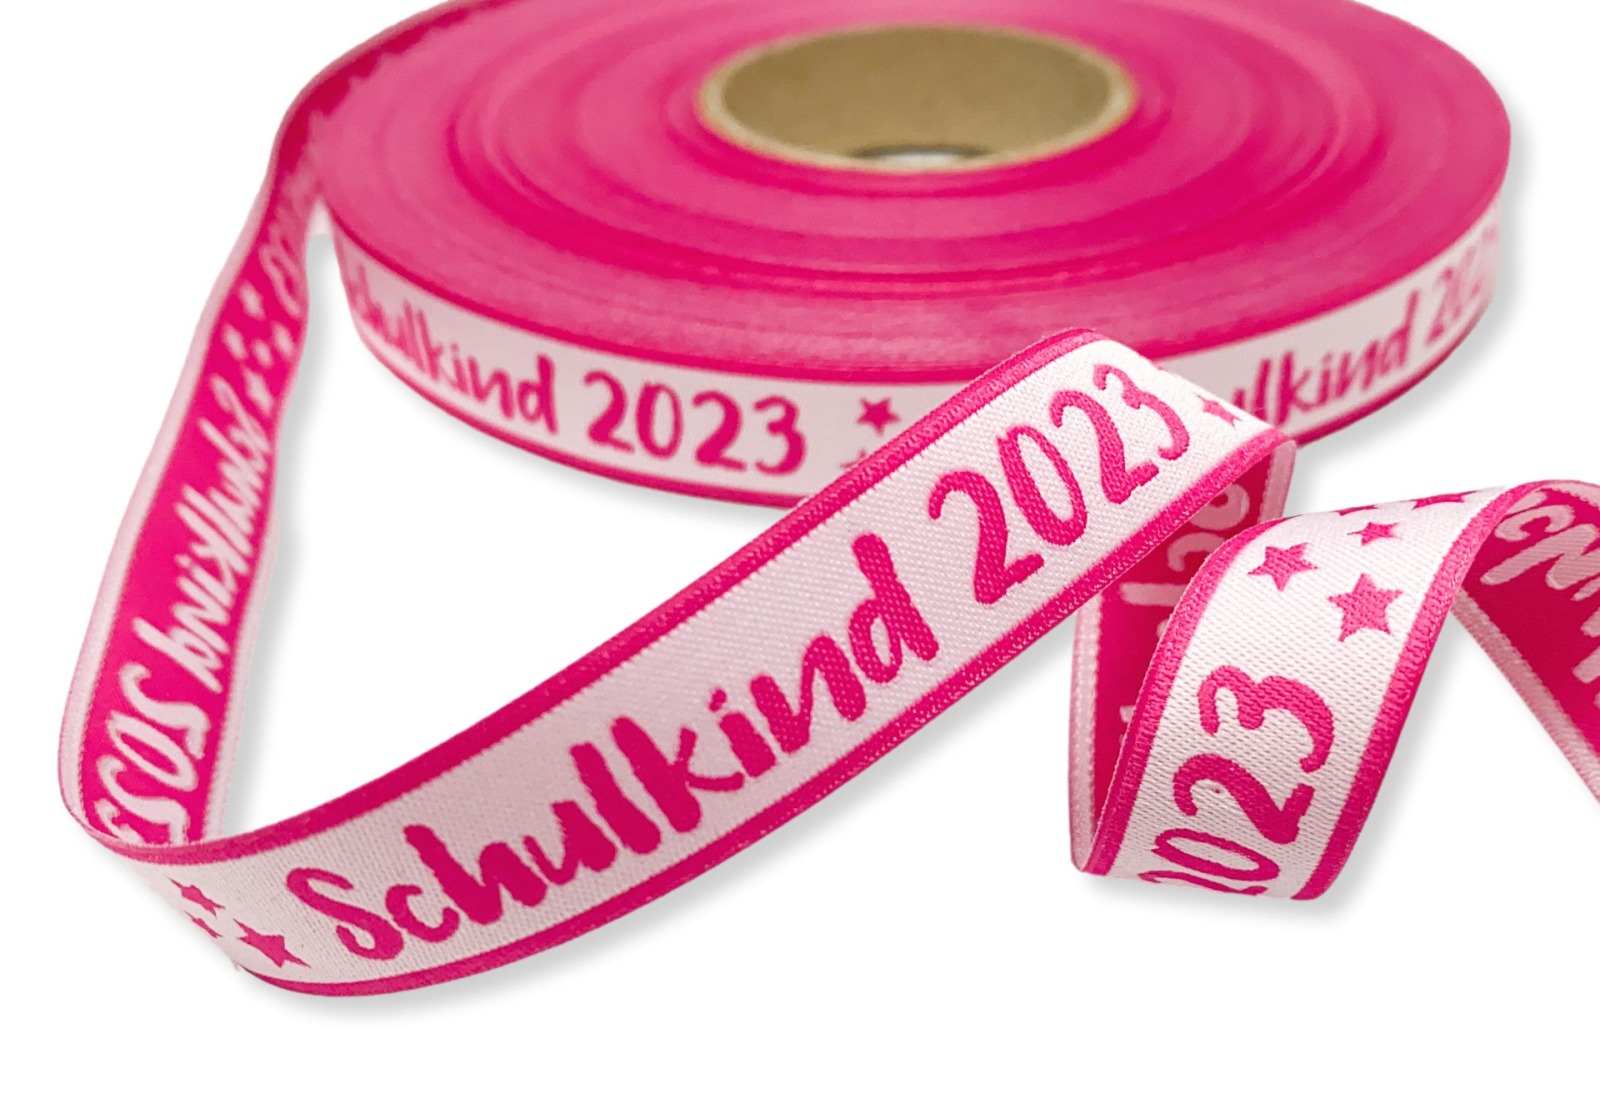 Webband Schulkind 2023 in pink für Schultüten und Einschulungsgeschenke 17 mm breit 4